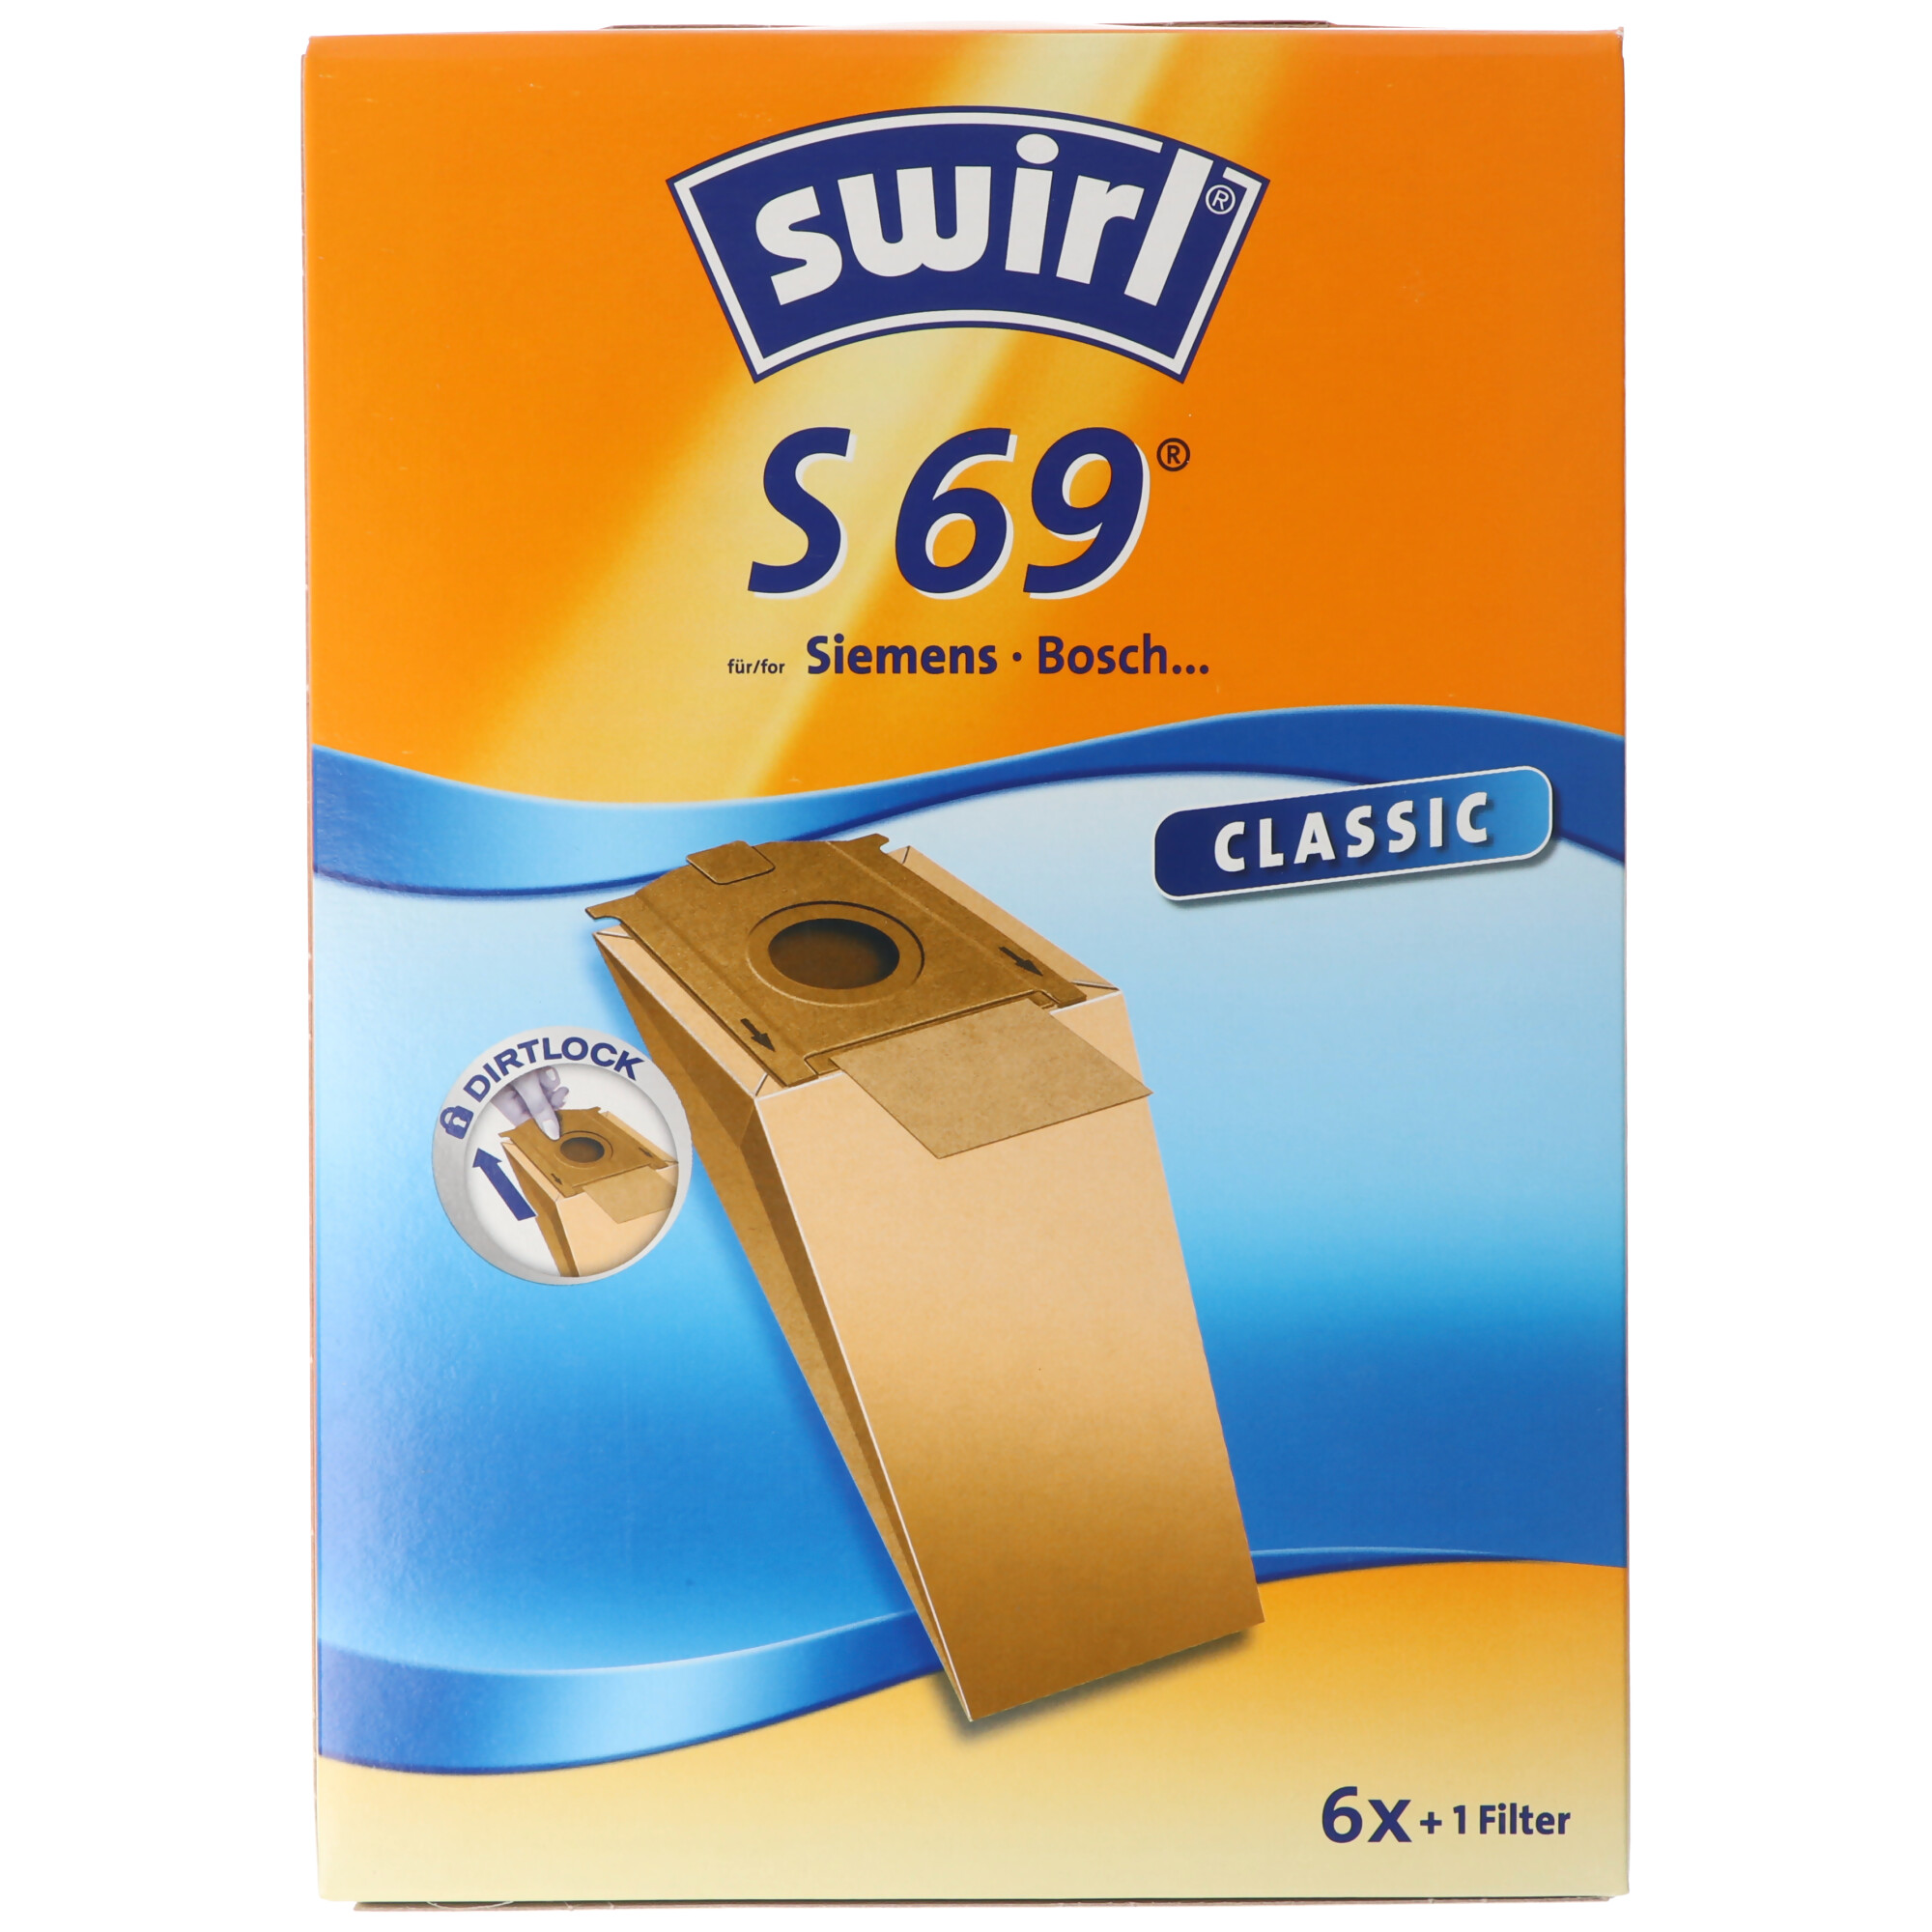 Swirl Staubsaugerbeutel S69 Classic aus Spezialpapier für Siemens und Bosch Staubsauger